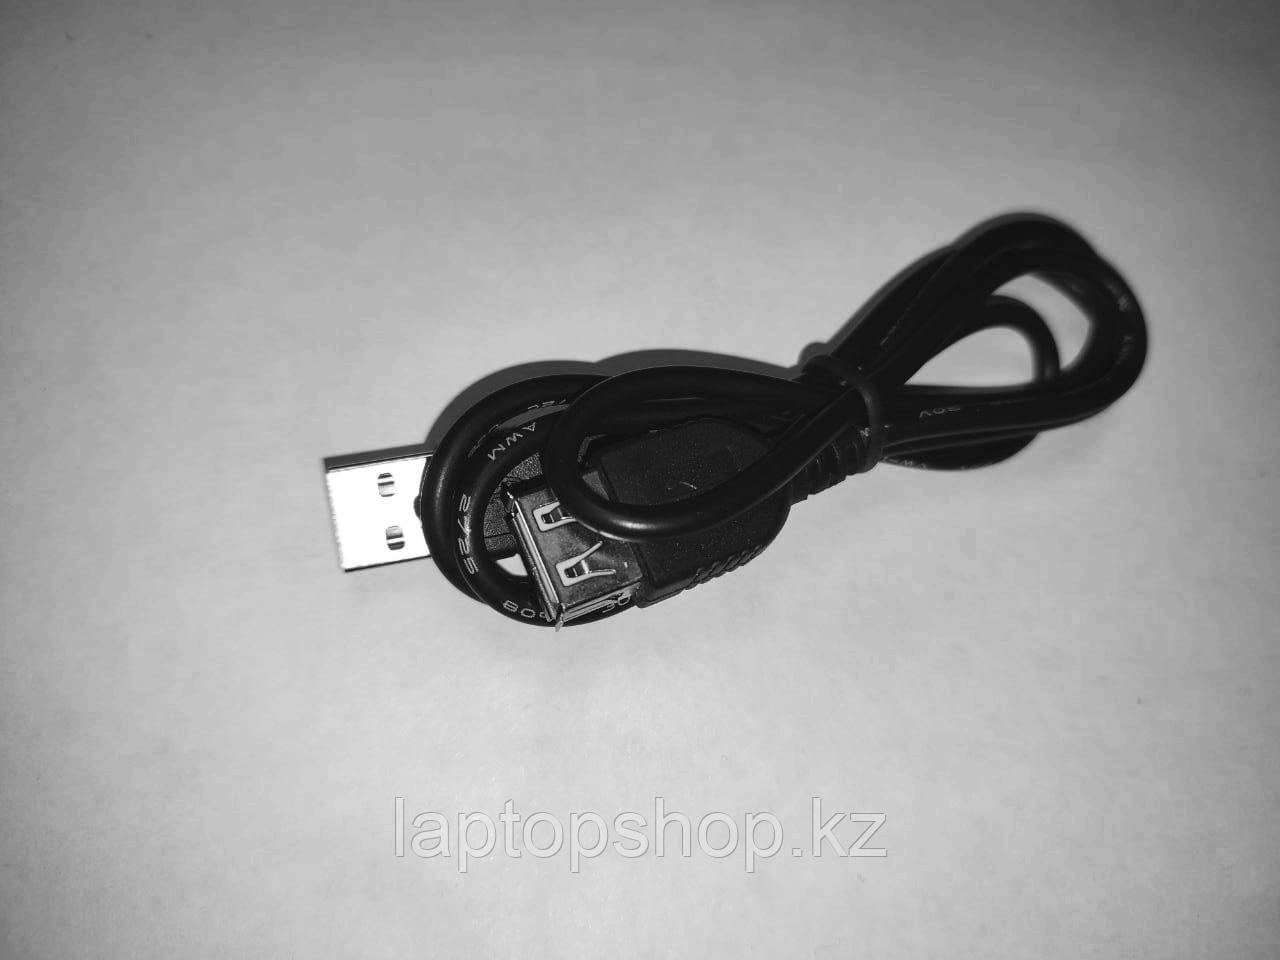 Удлинитель Cable USB AM-AF 80cm